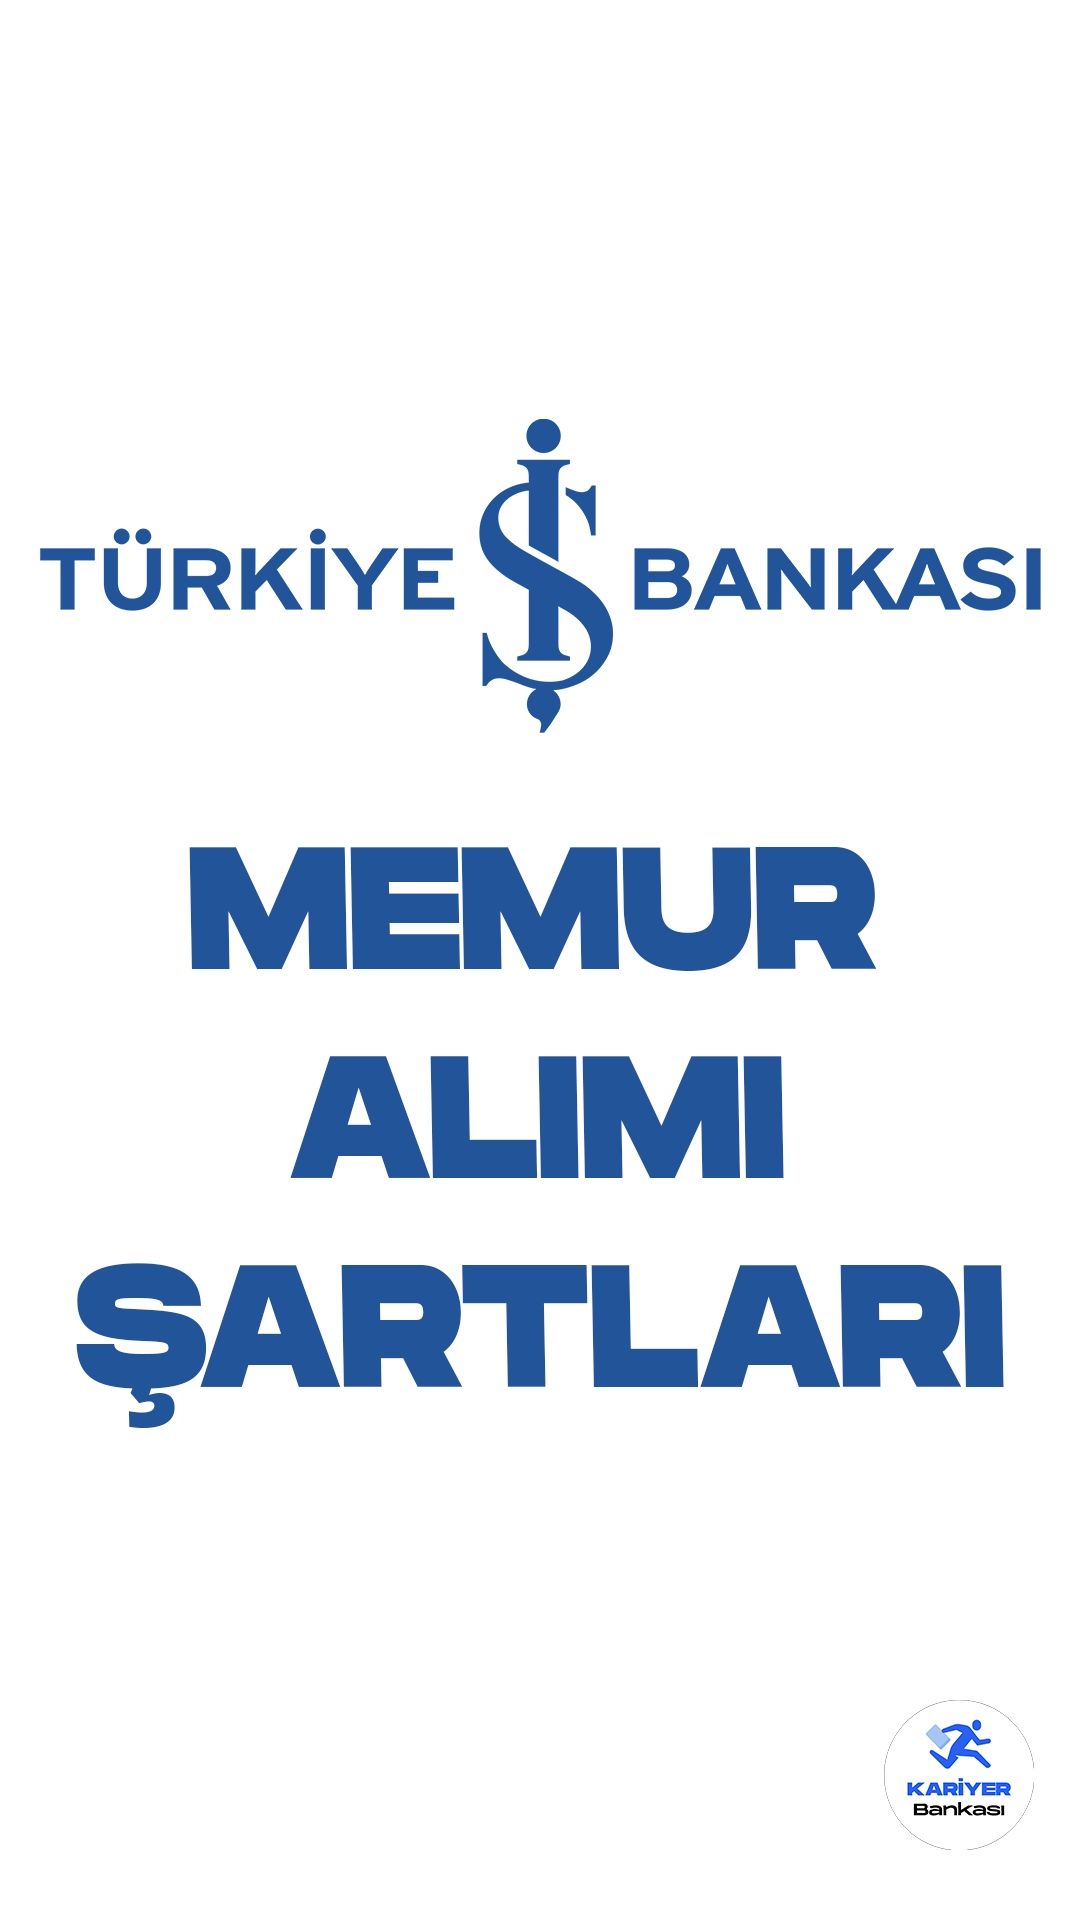 Türkiye İş Bankası memur alımı başvuruları devam ediyor. Başvuru şartları ve başvuru sayfasında dair detaylar bu haberimizde.